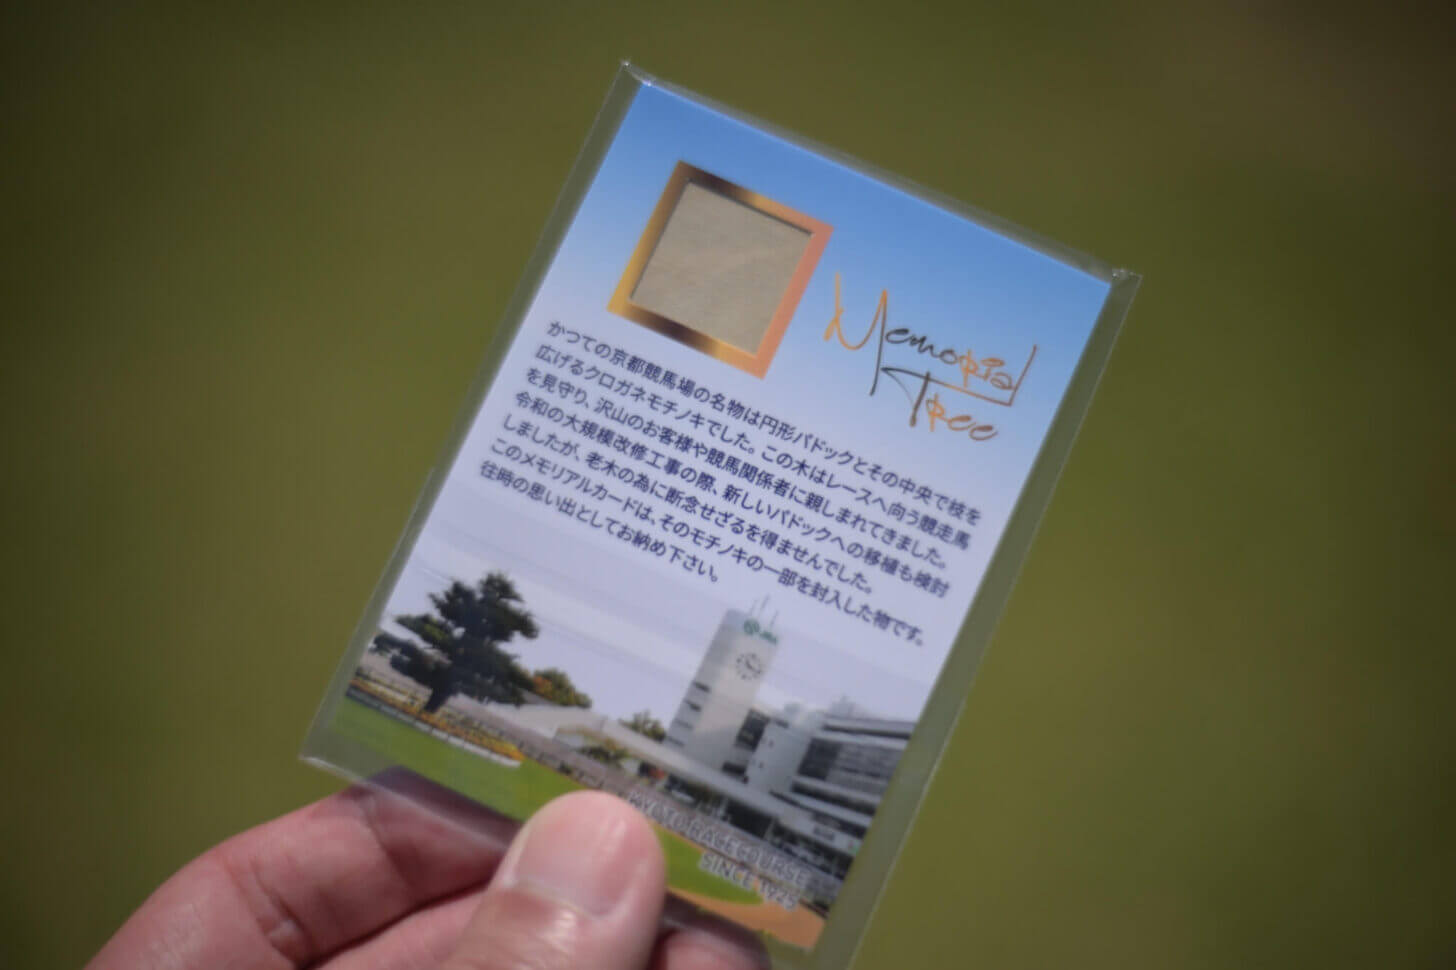 新装京都競馬場 モチノキメモリアルカード